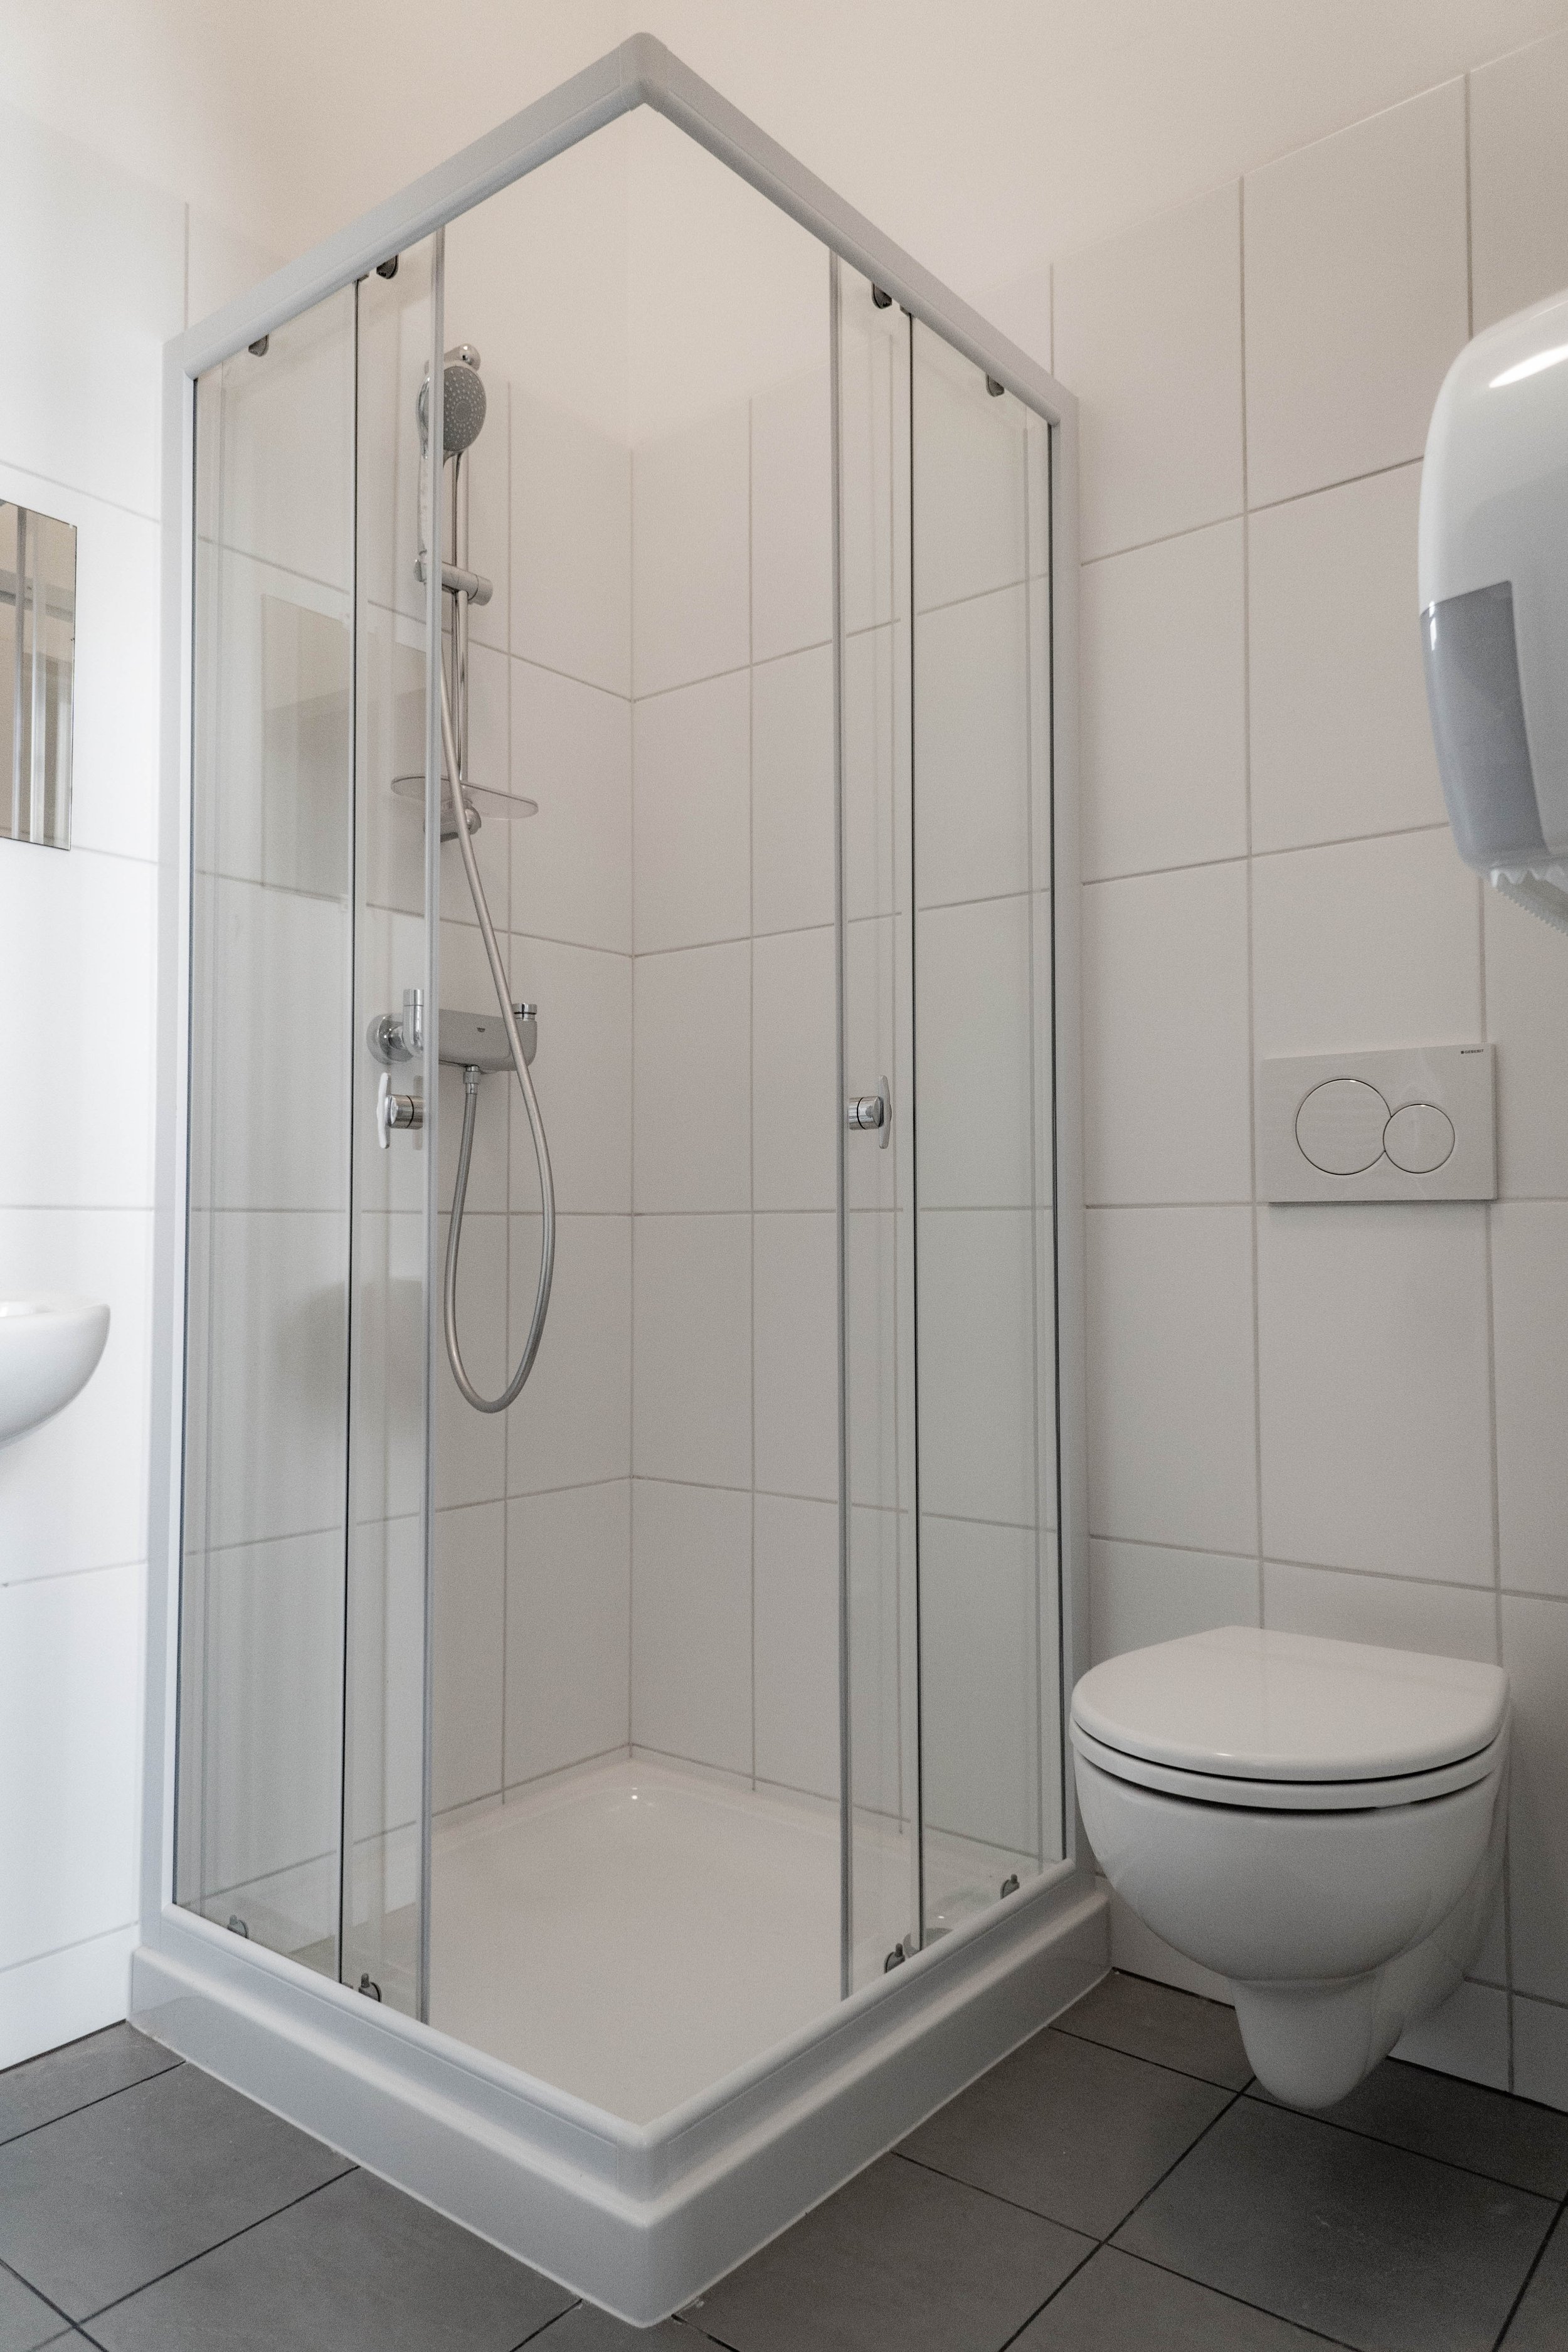 Equity Point Budapest Shared Room Dorm Bathroom Shower.jpg